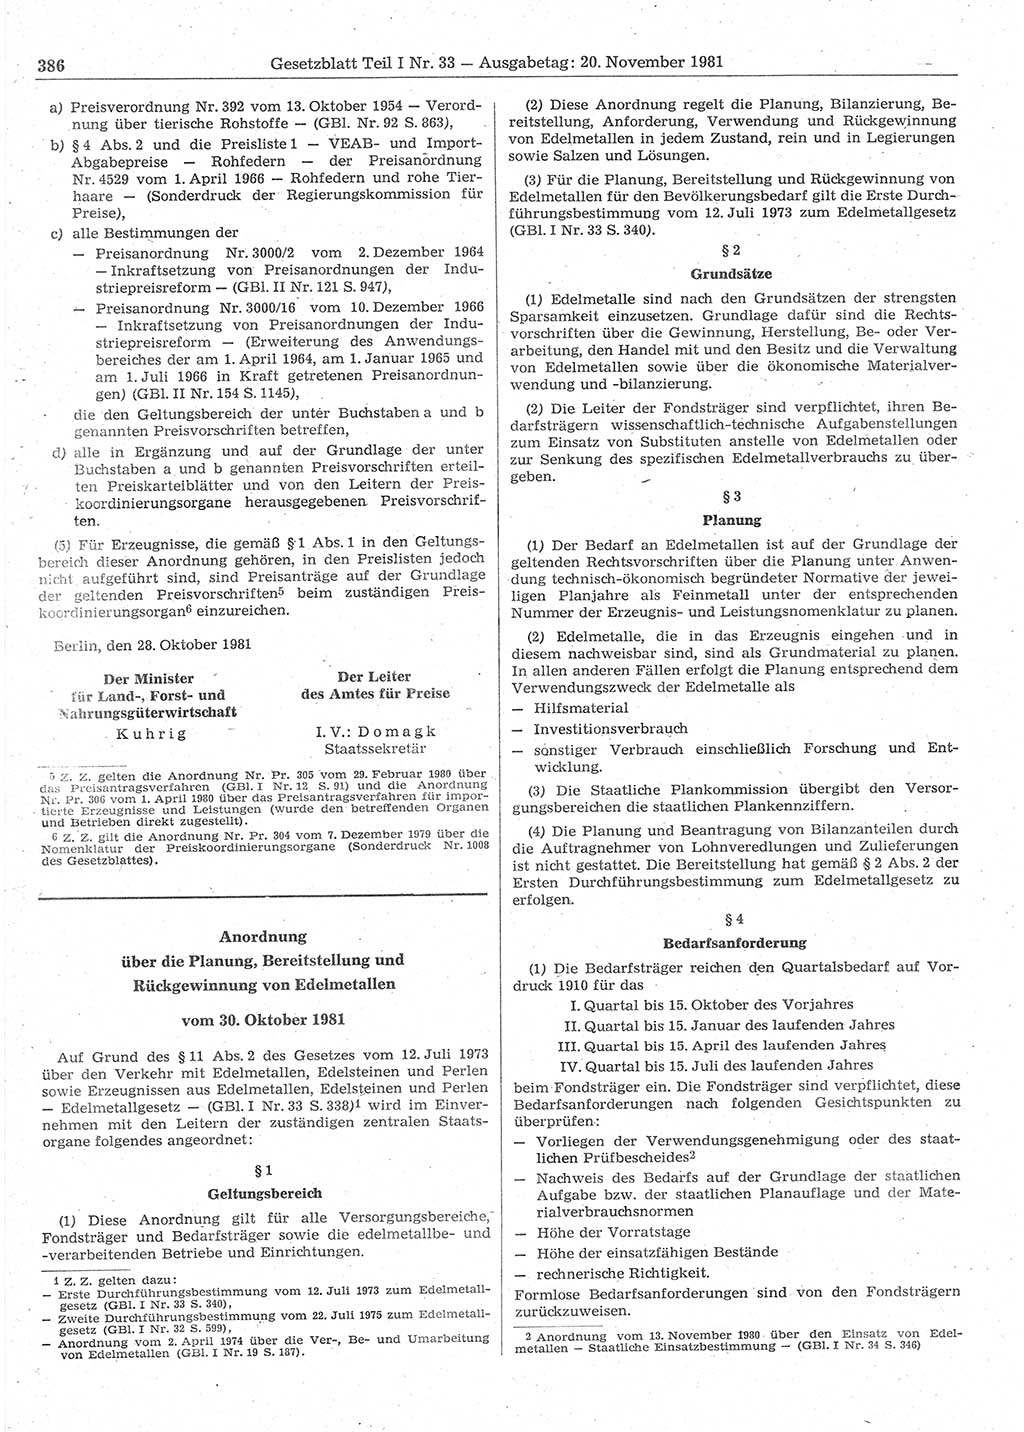 Gesetzblatt (GBl.) der Deutschen Demokratischen Republik (DDR) Teil Ⅰ 1981, Seite 386 (GBl. DDR Ⅰ 1981, S. 386)